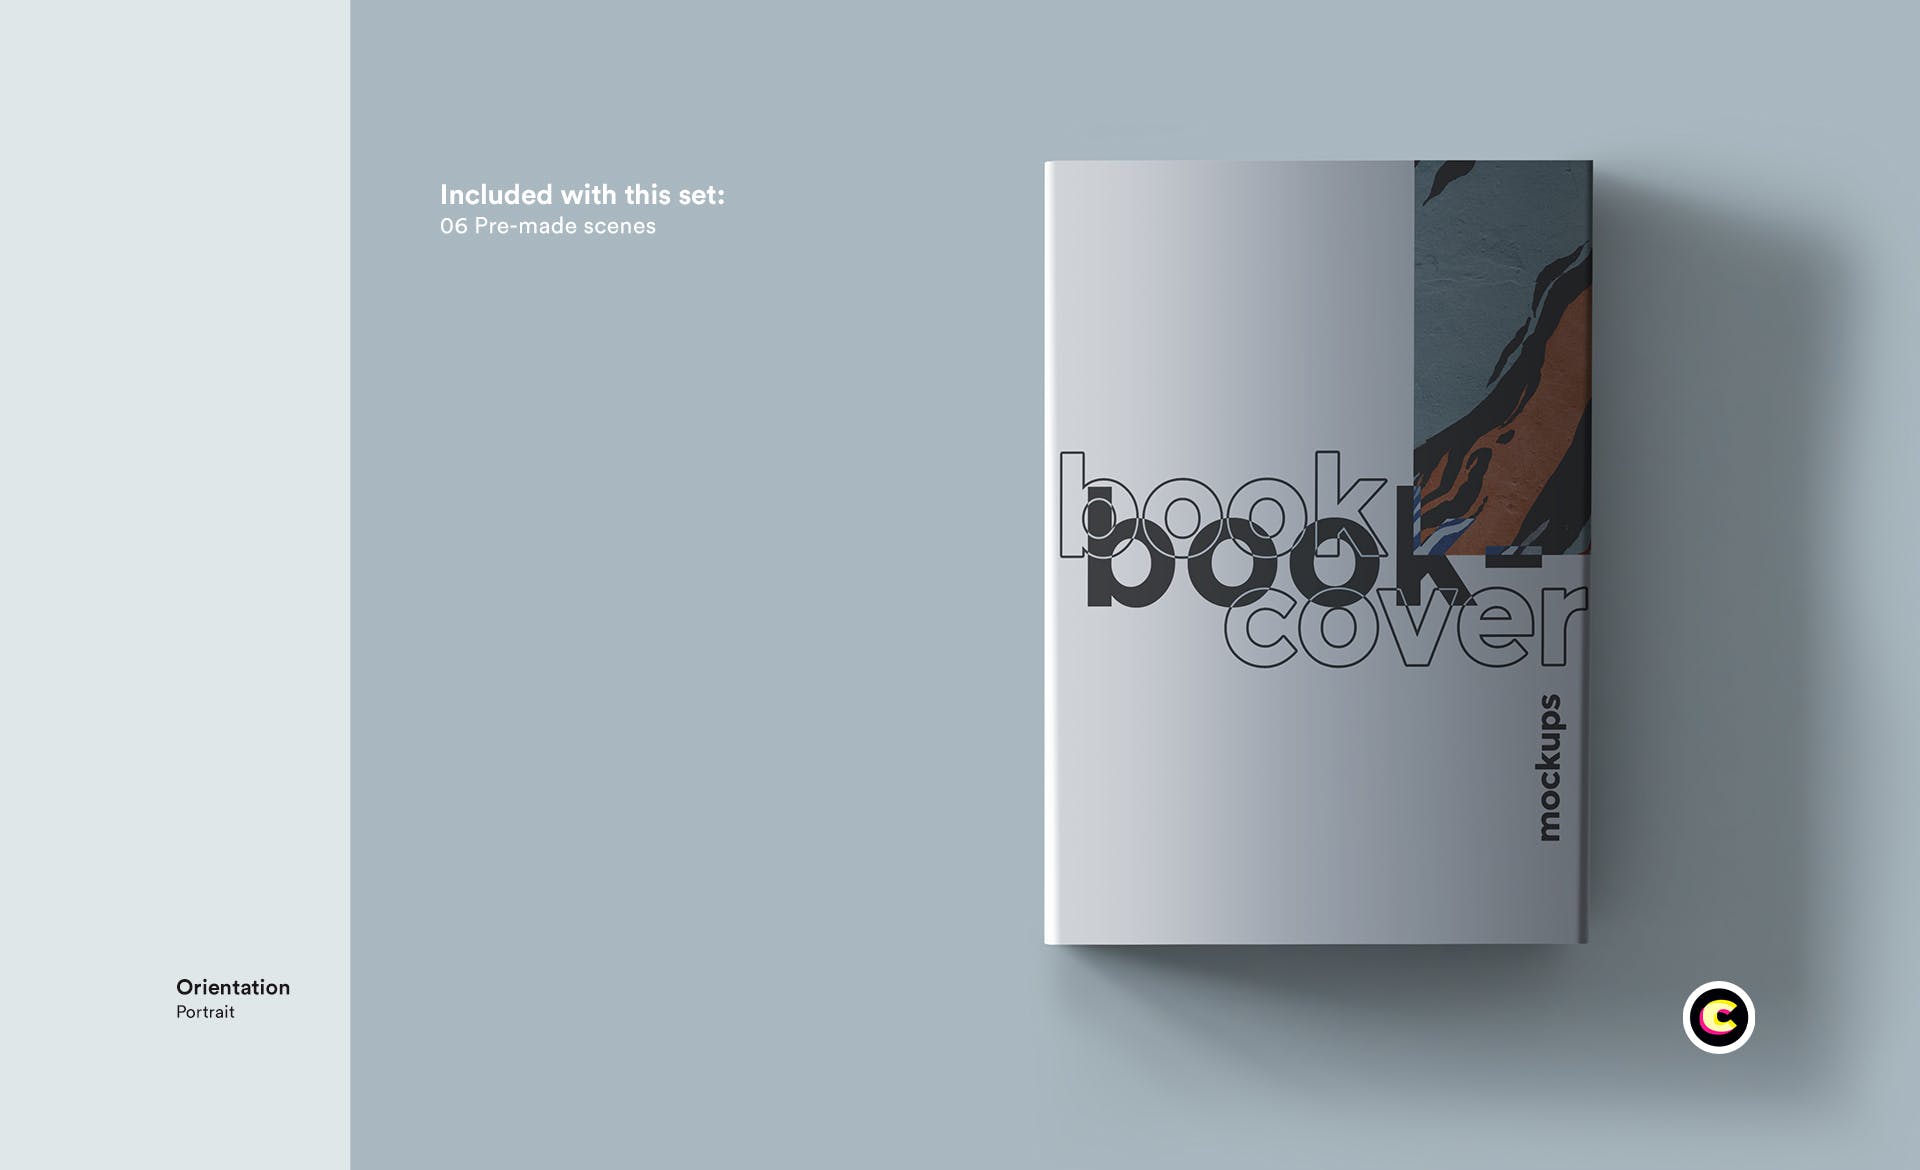 精品图书封面&排版设计效果图样机第一素材精选模板 Book Mock Up插图(3)